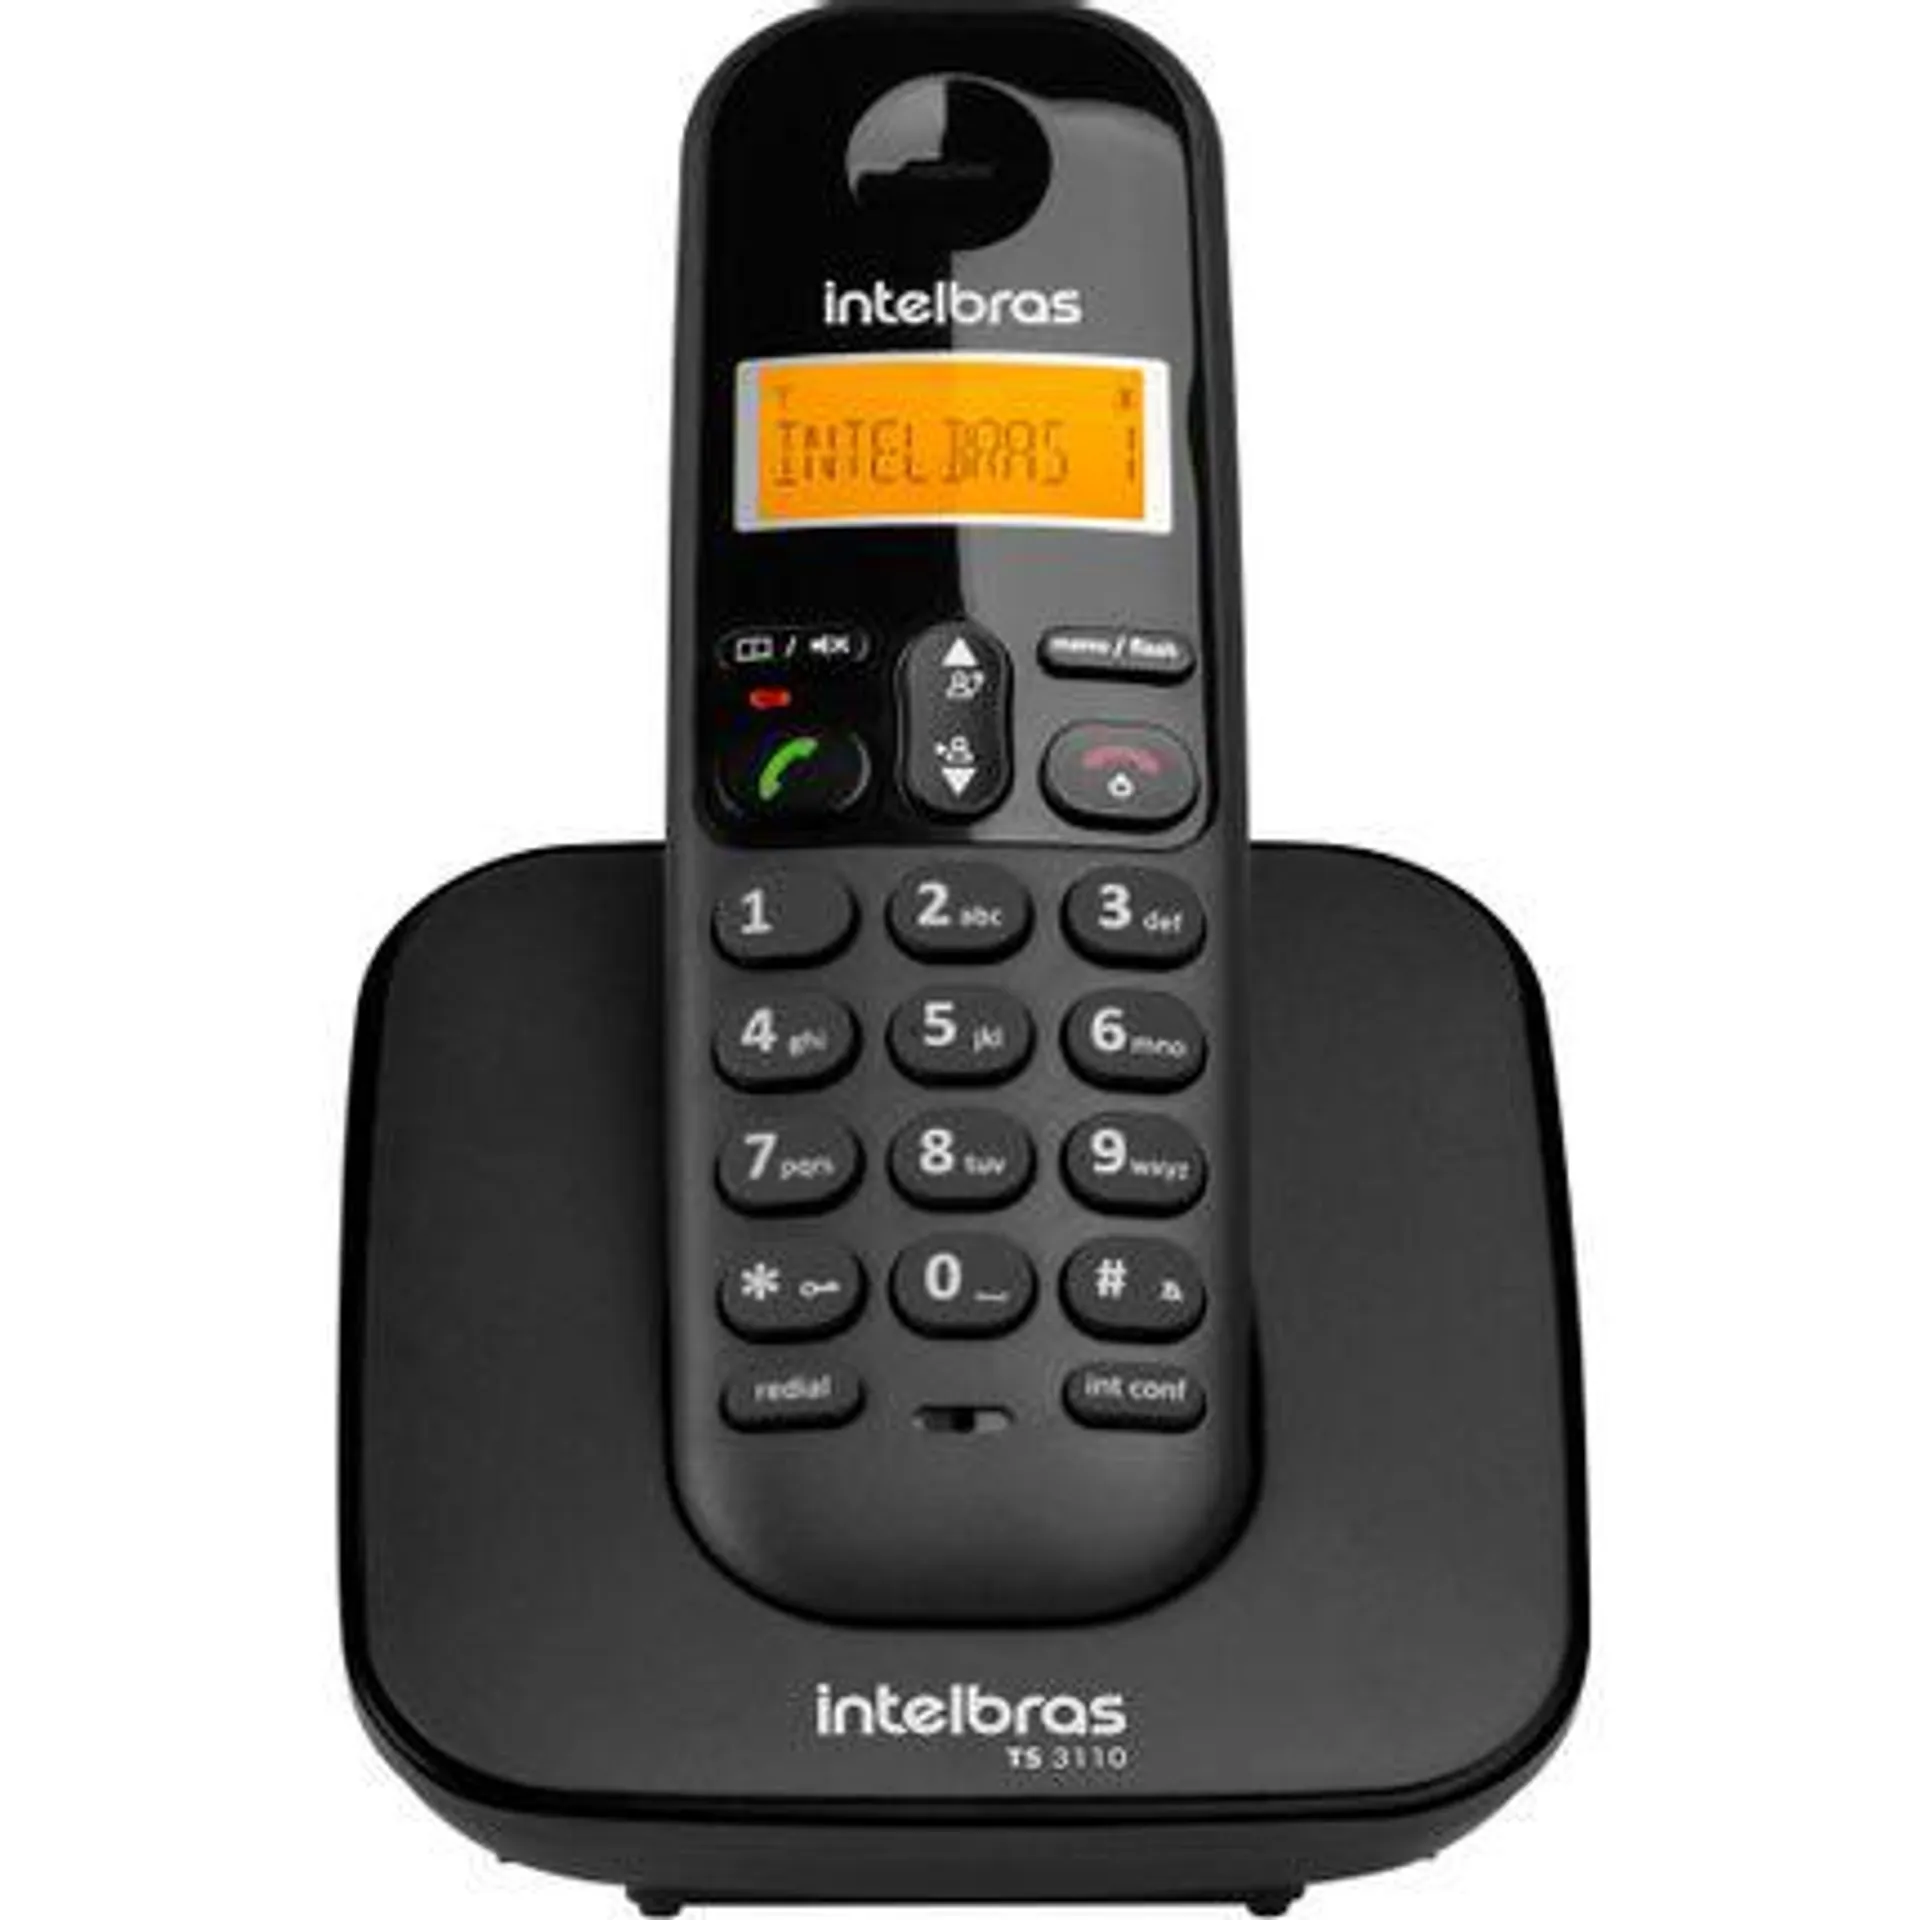 Telefone sem fio Intelbras TS3110 com Identificador de chamadas - Preto